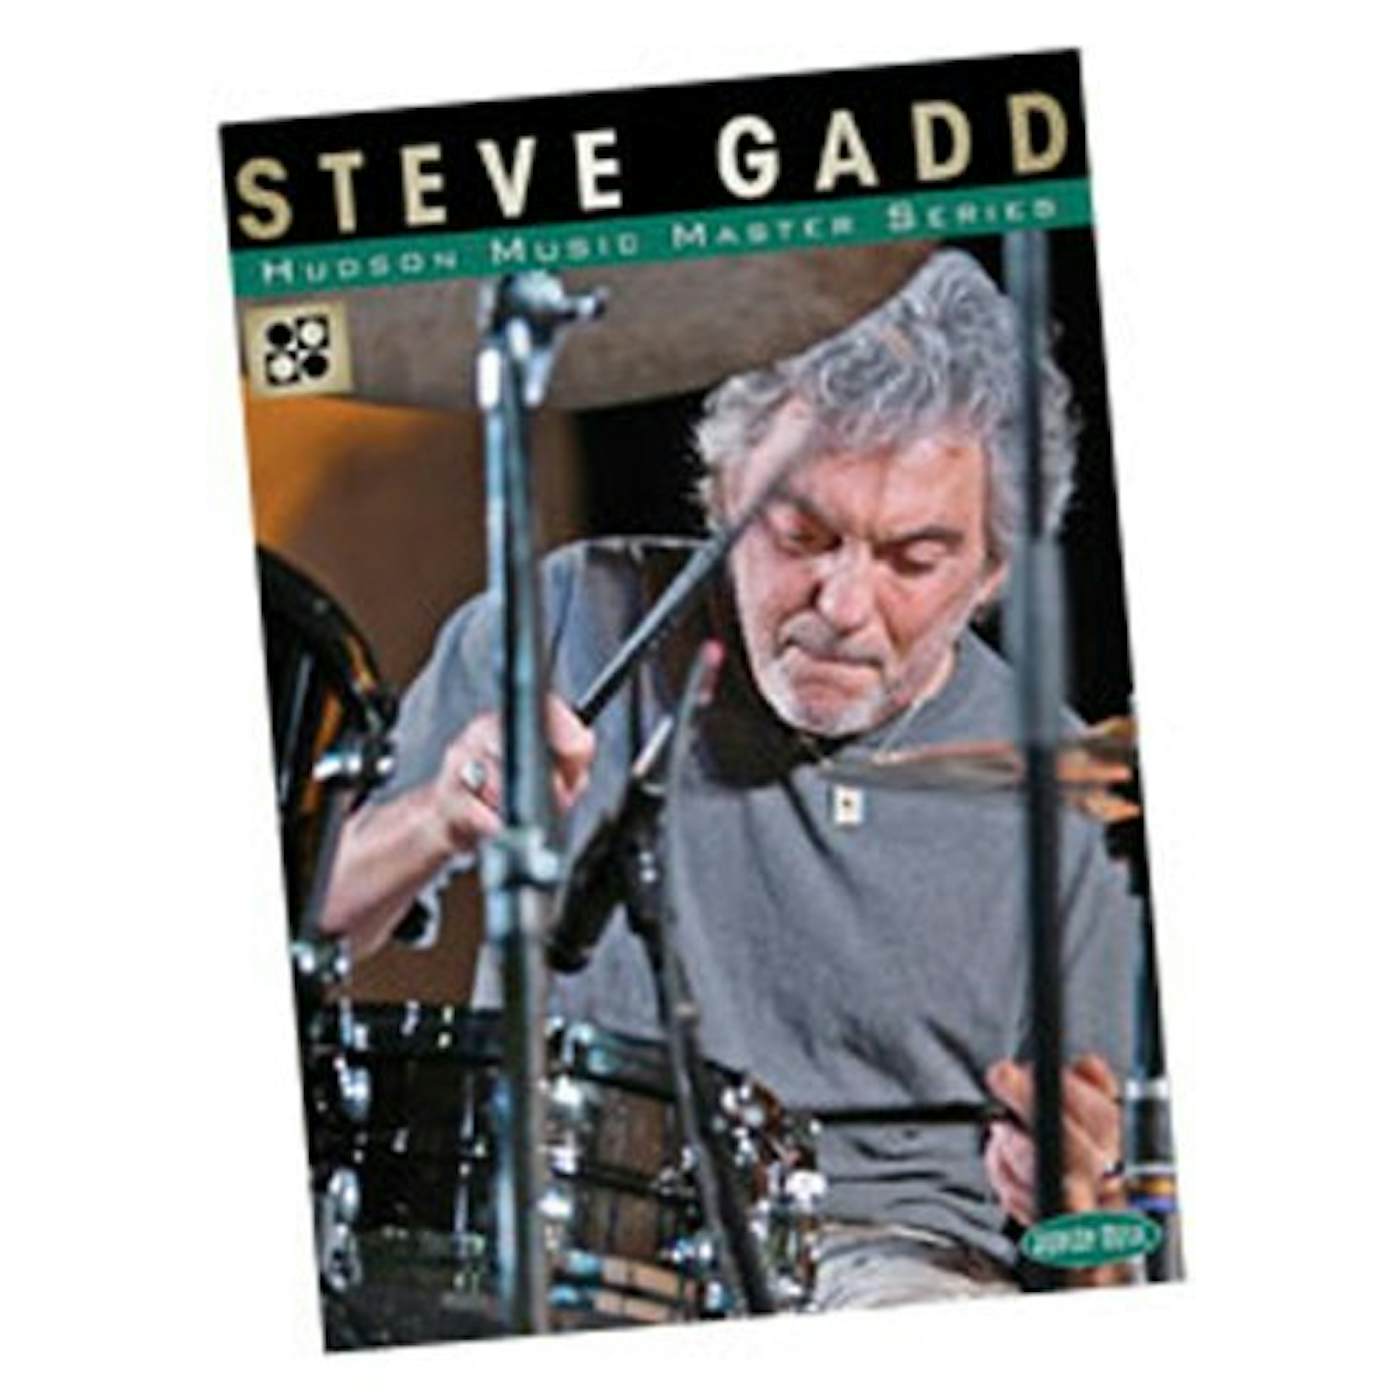 Steve Gadd MASTER SERIES DVD